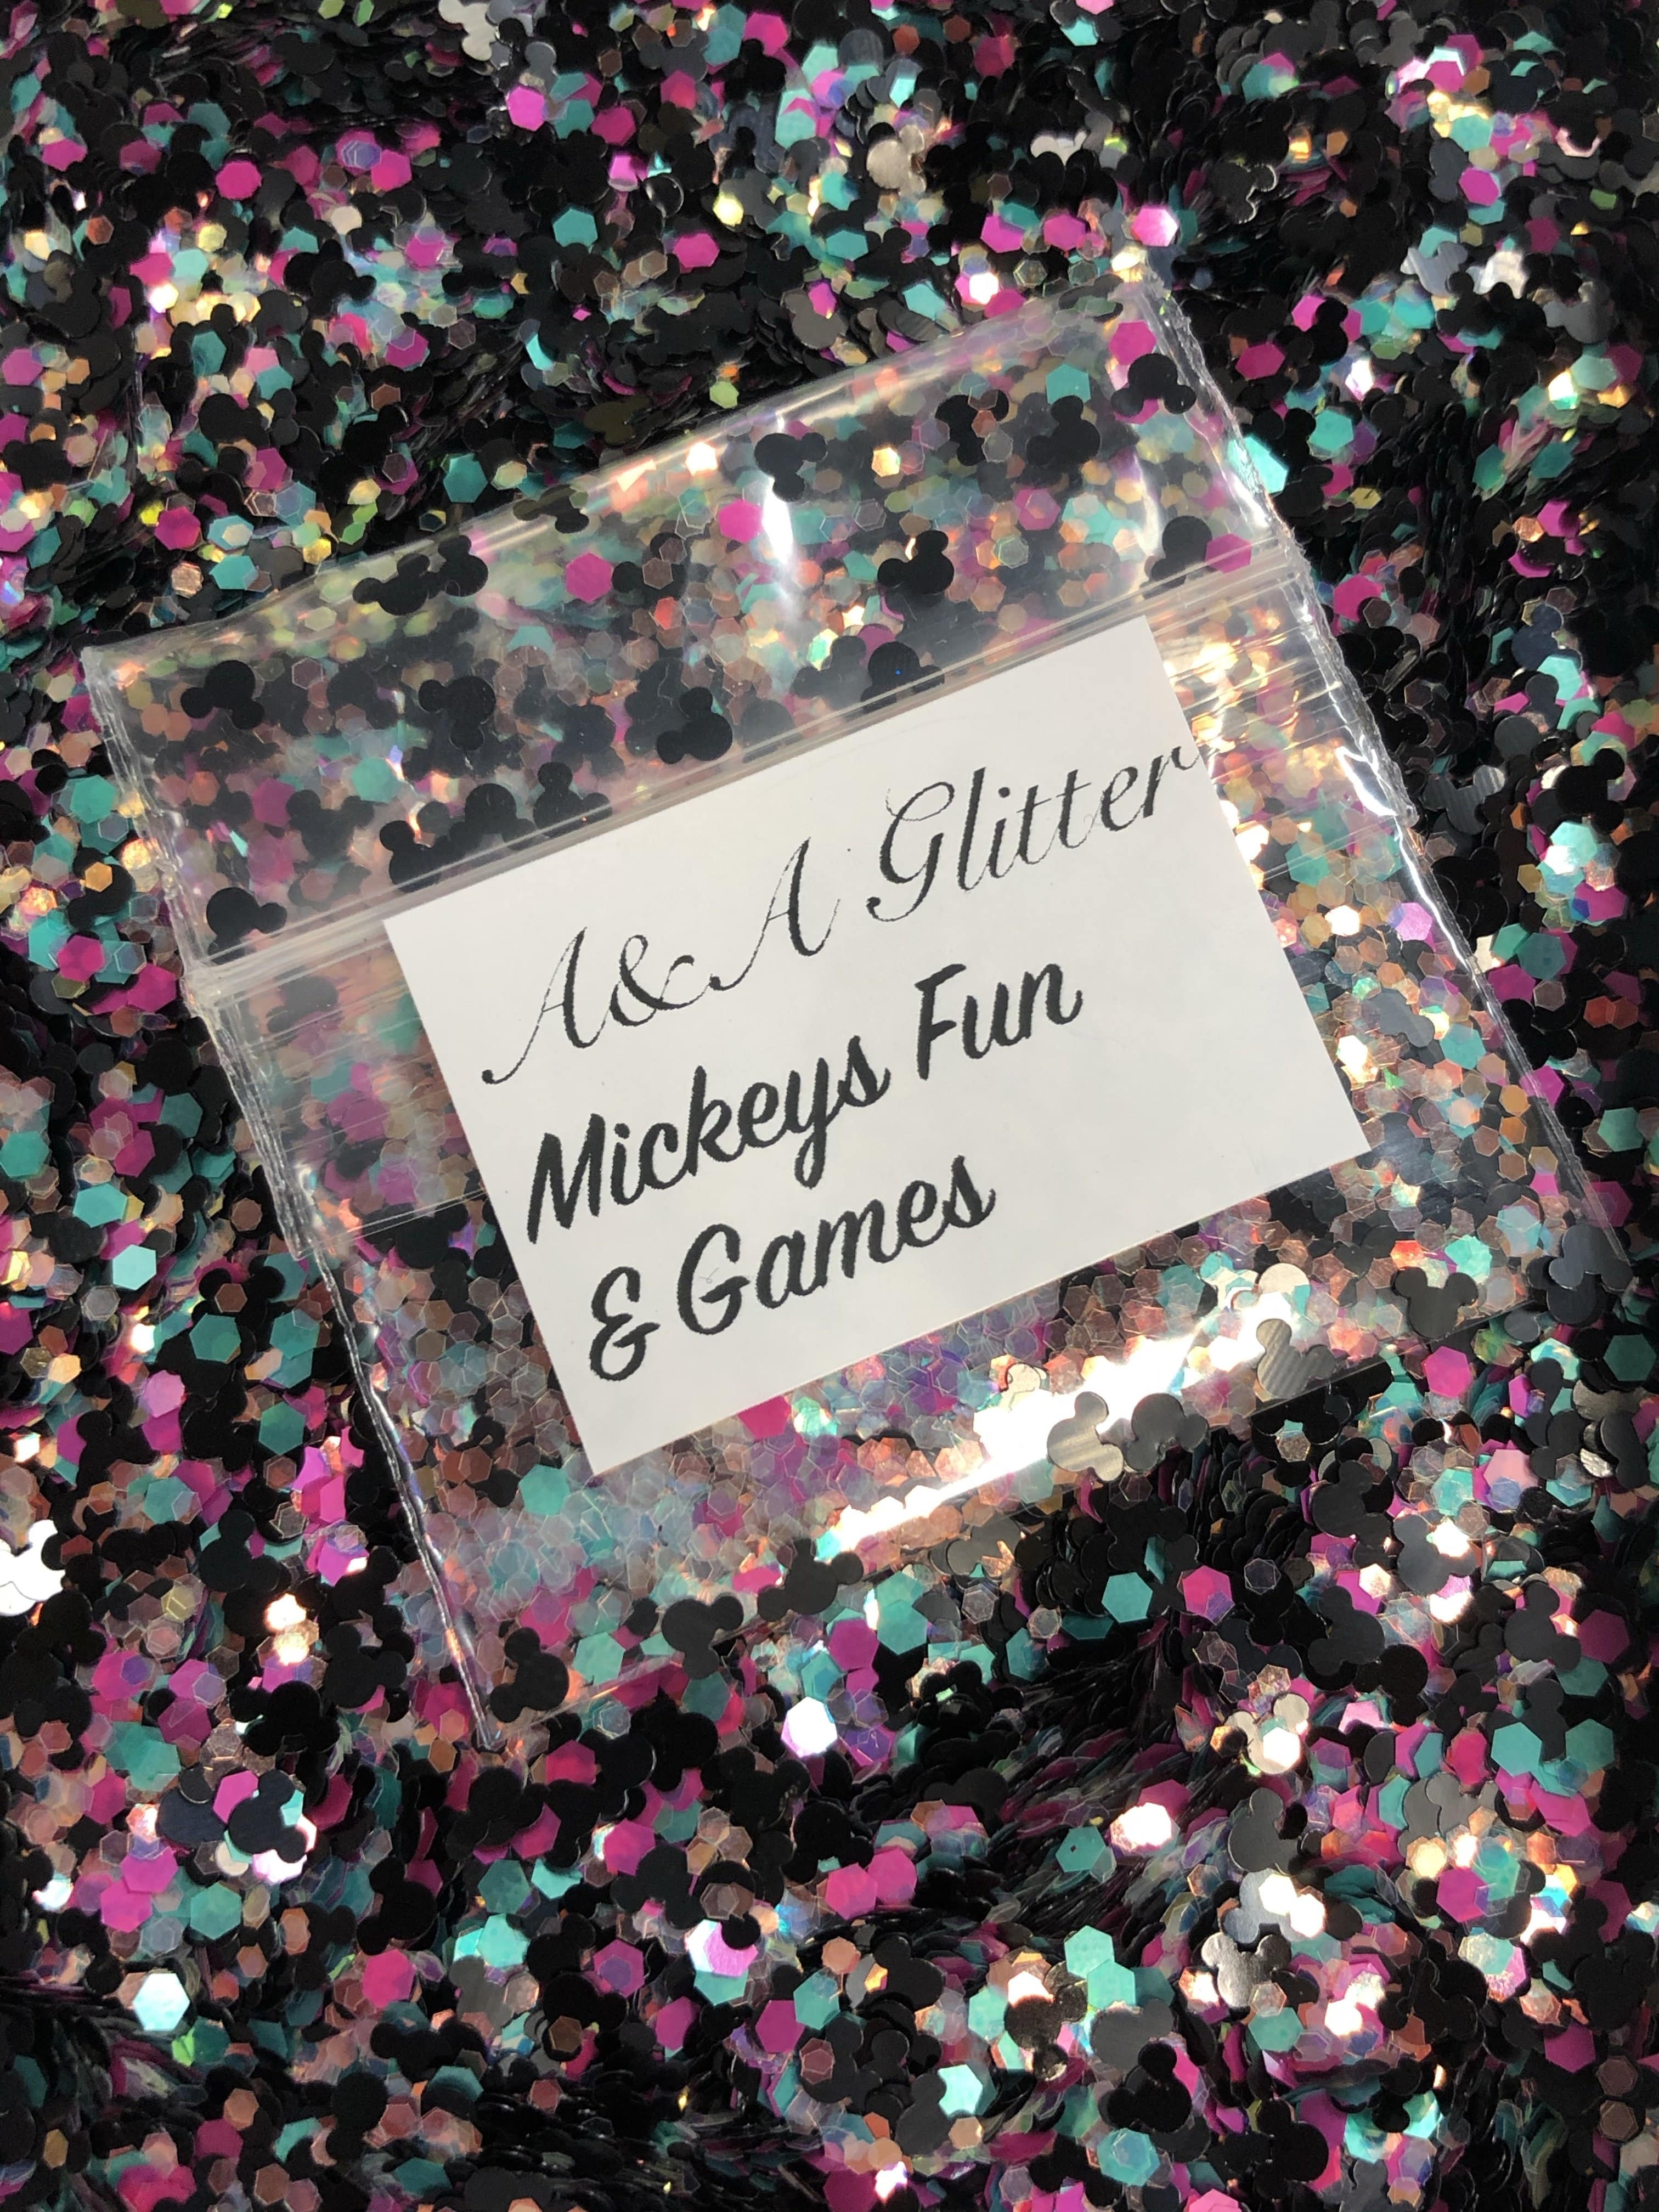 Mickey's Fun & Games